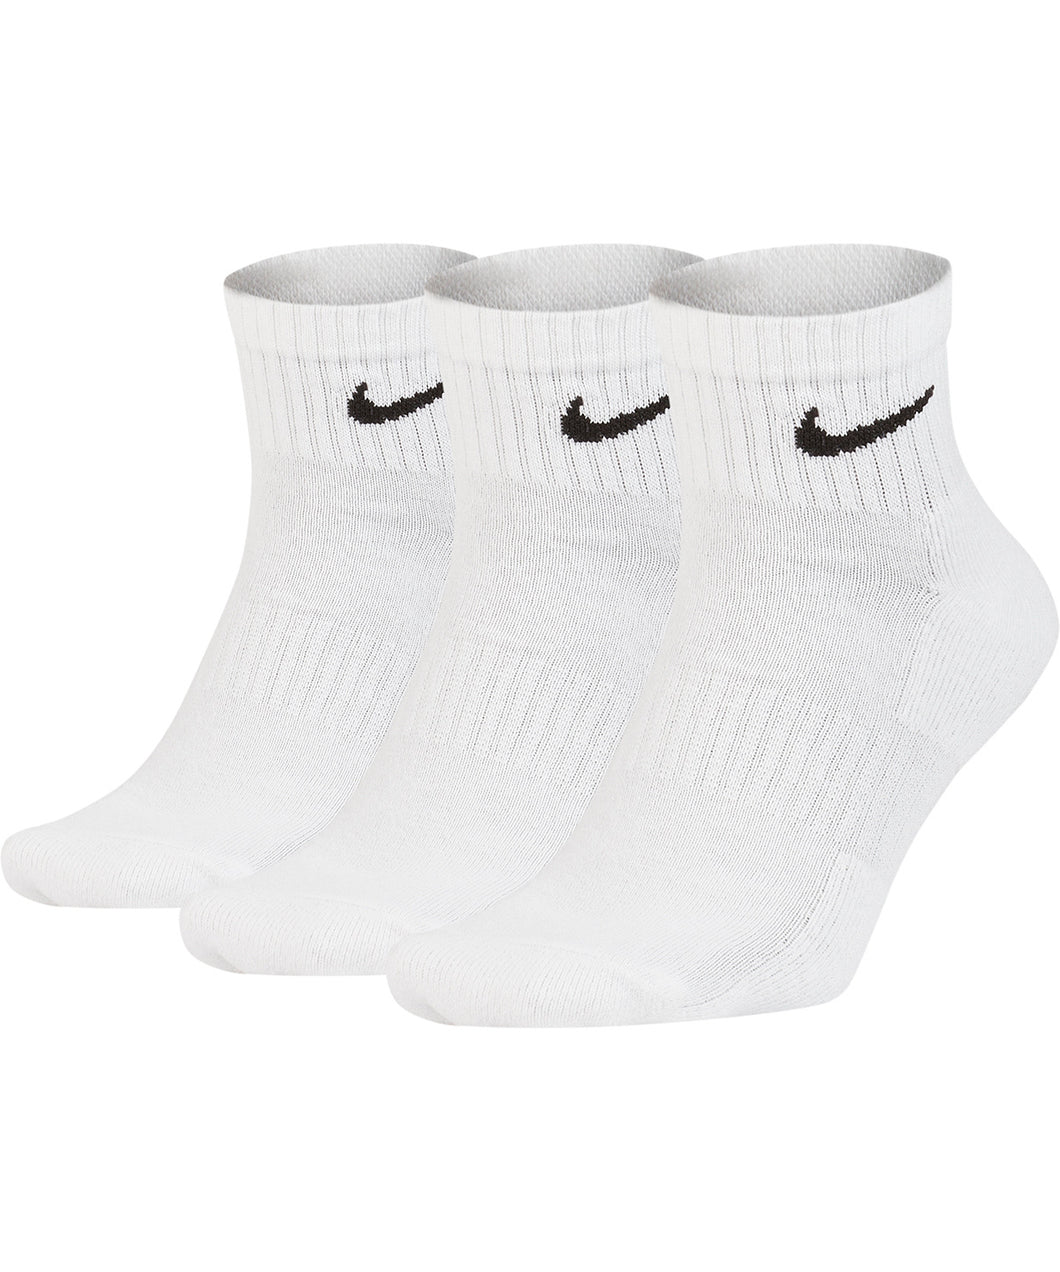 Nike Ankle Socks (3 pairs)